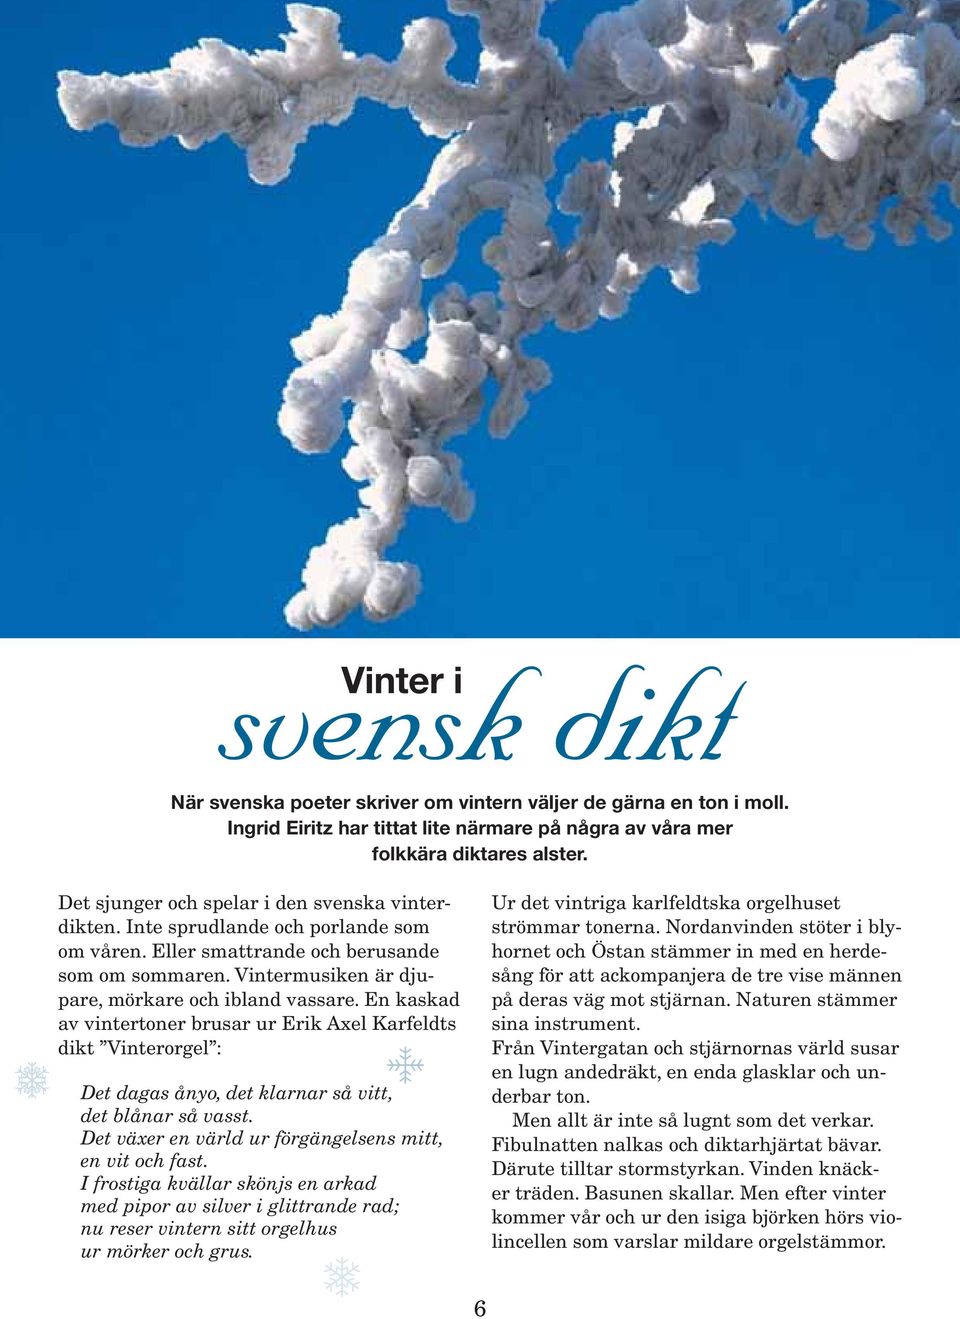 En kaskad av vintertoner brusar ur Erik Axel Karfeldts dikt Vinterorgel : Det dagas ånyo, det klarnar så vitt, det blånar så vasst. Det växer en värld ur förgängelsens mitt, en vit och fast.